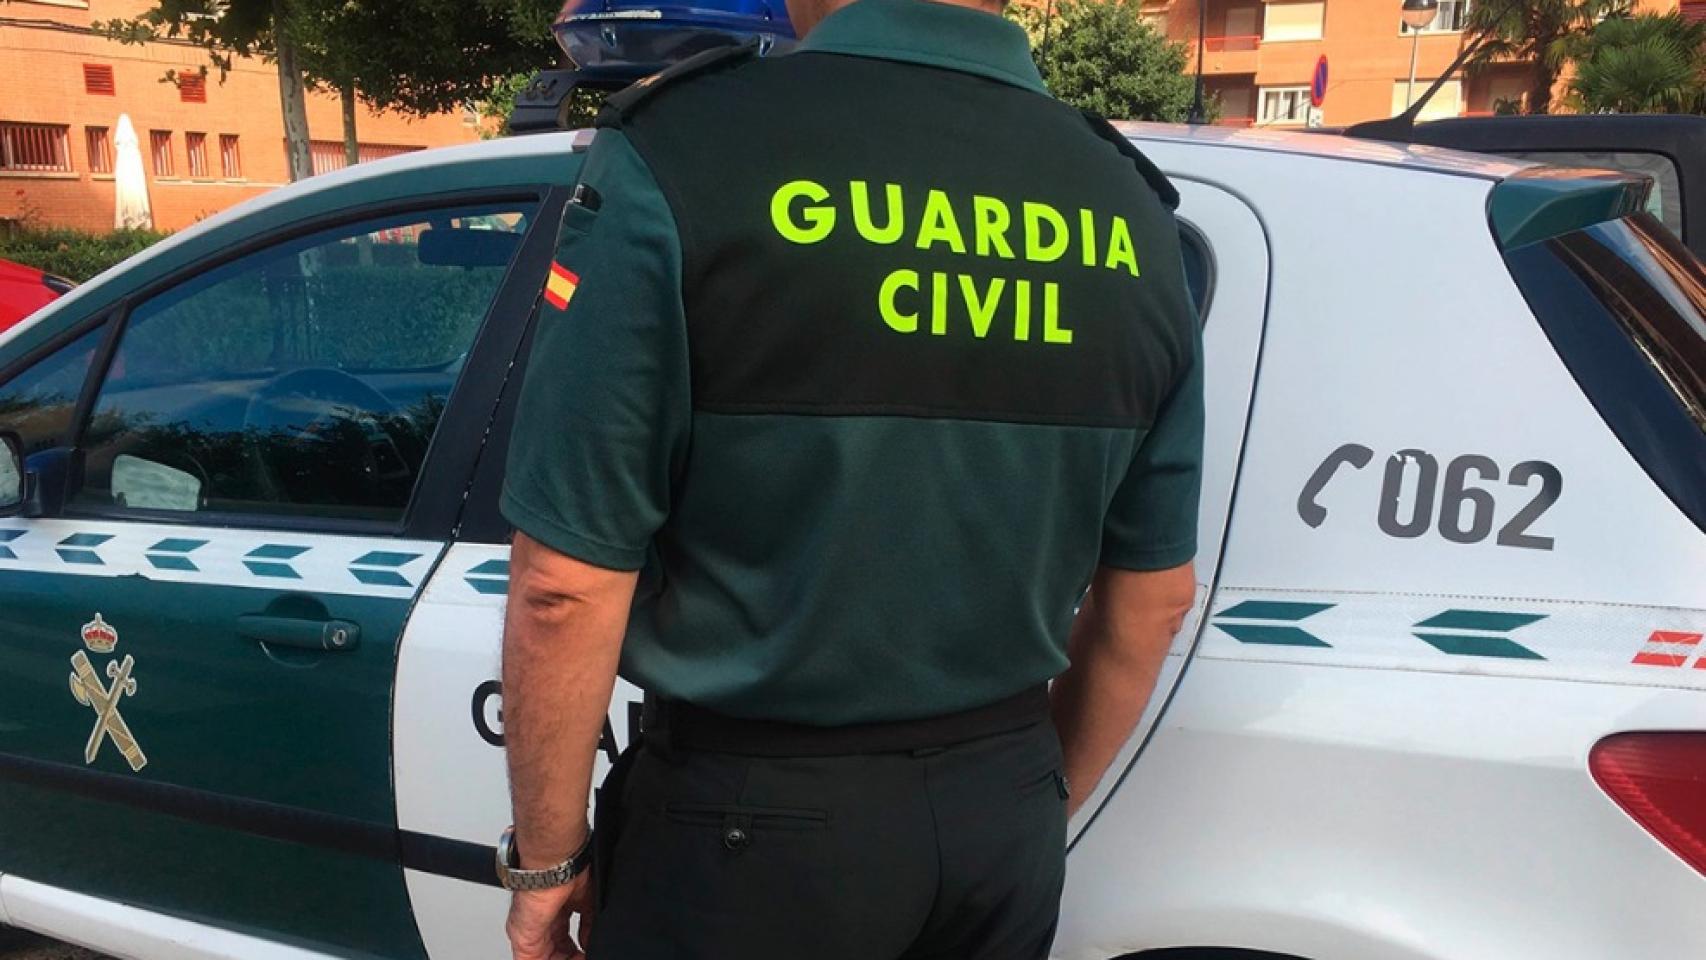 Las detenciones fueron practicadas por la Guardia Civil.